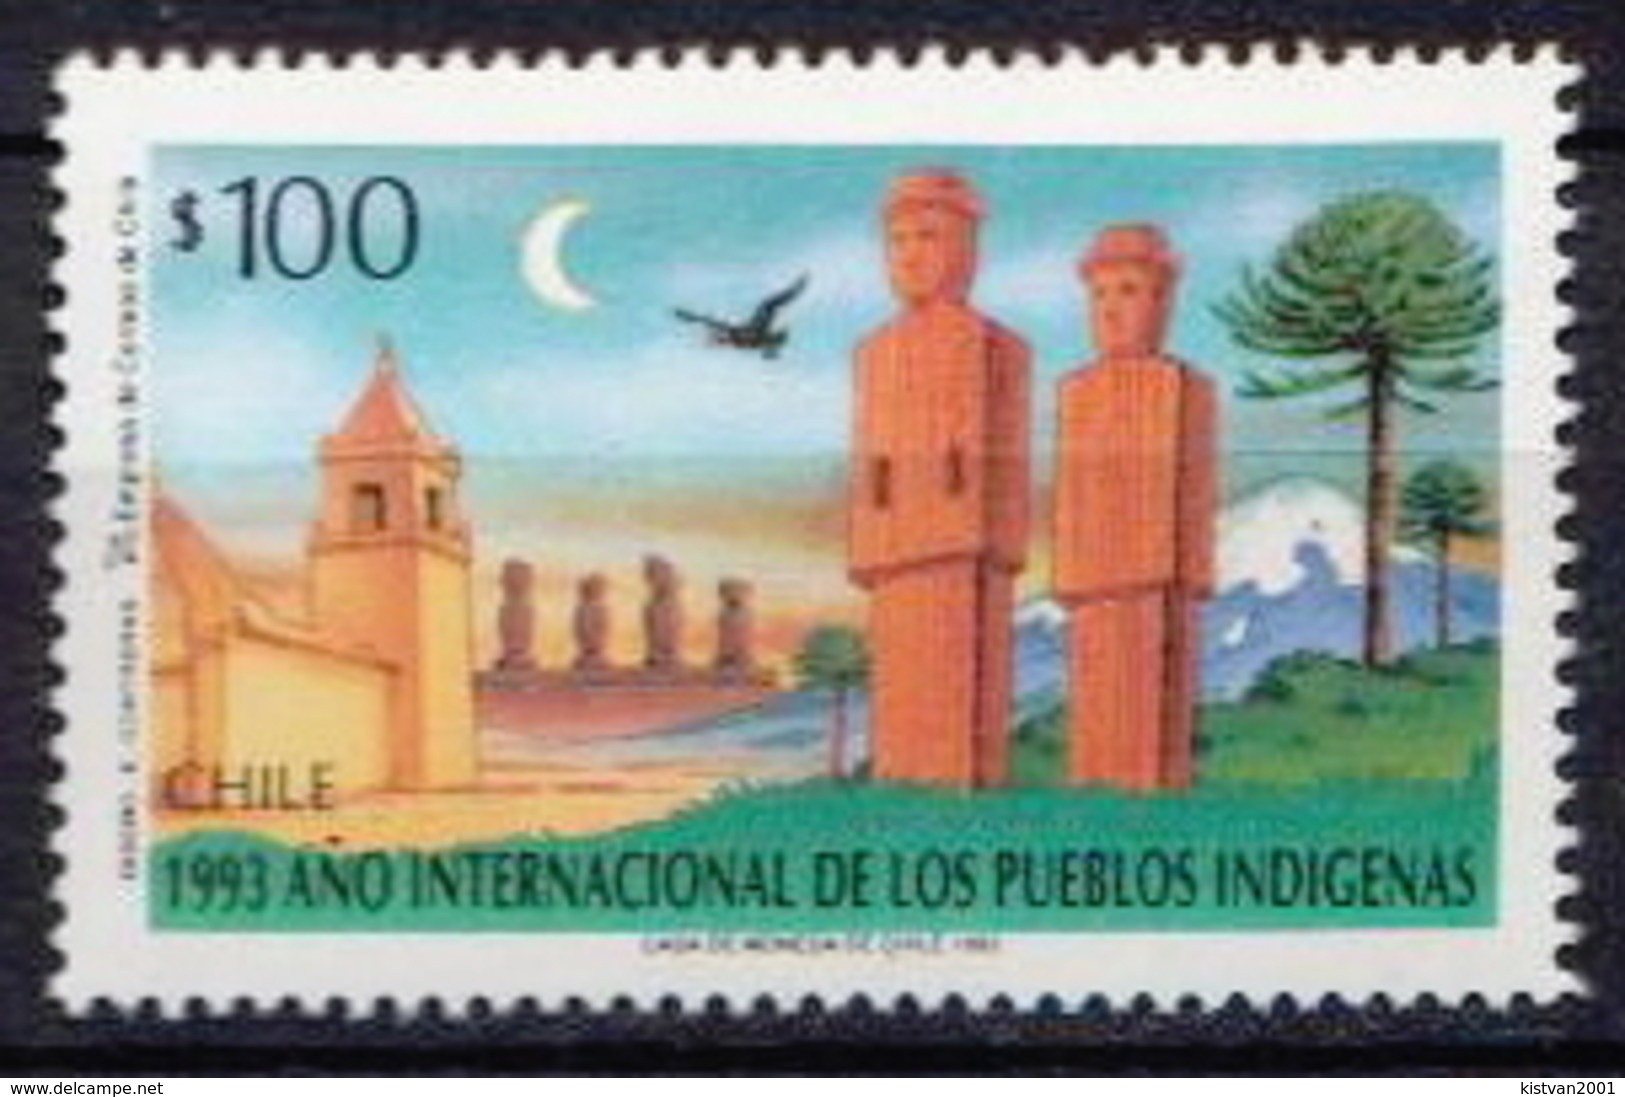 Chile MNH Stamp - Chili